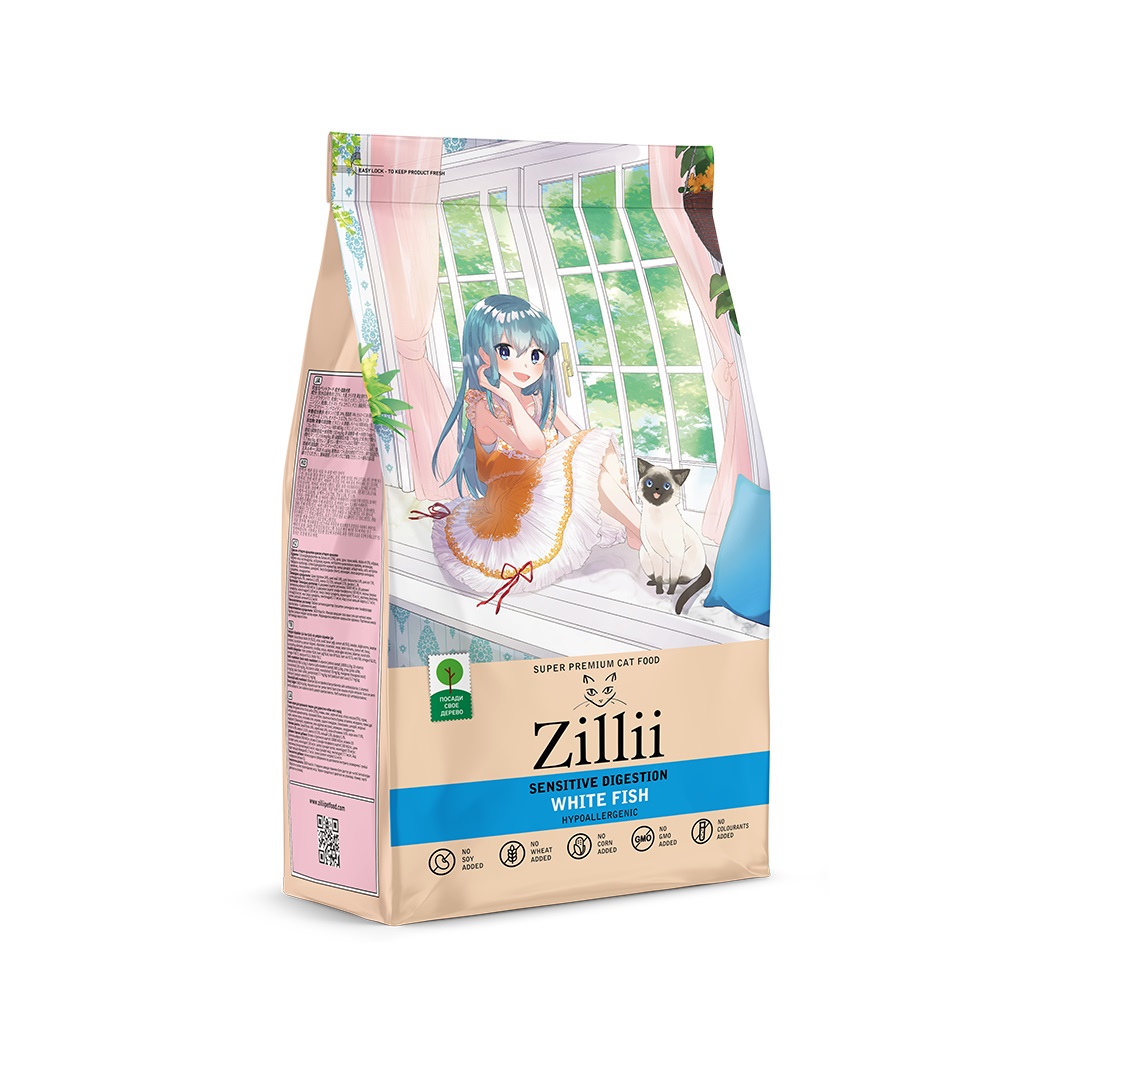 Зилли 400гр - Белая Рыба, для кошек с Чувствительным пищеварением (Zillii)